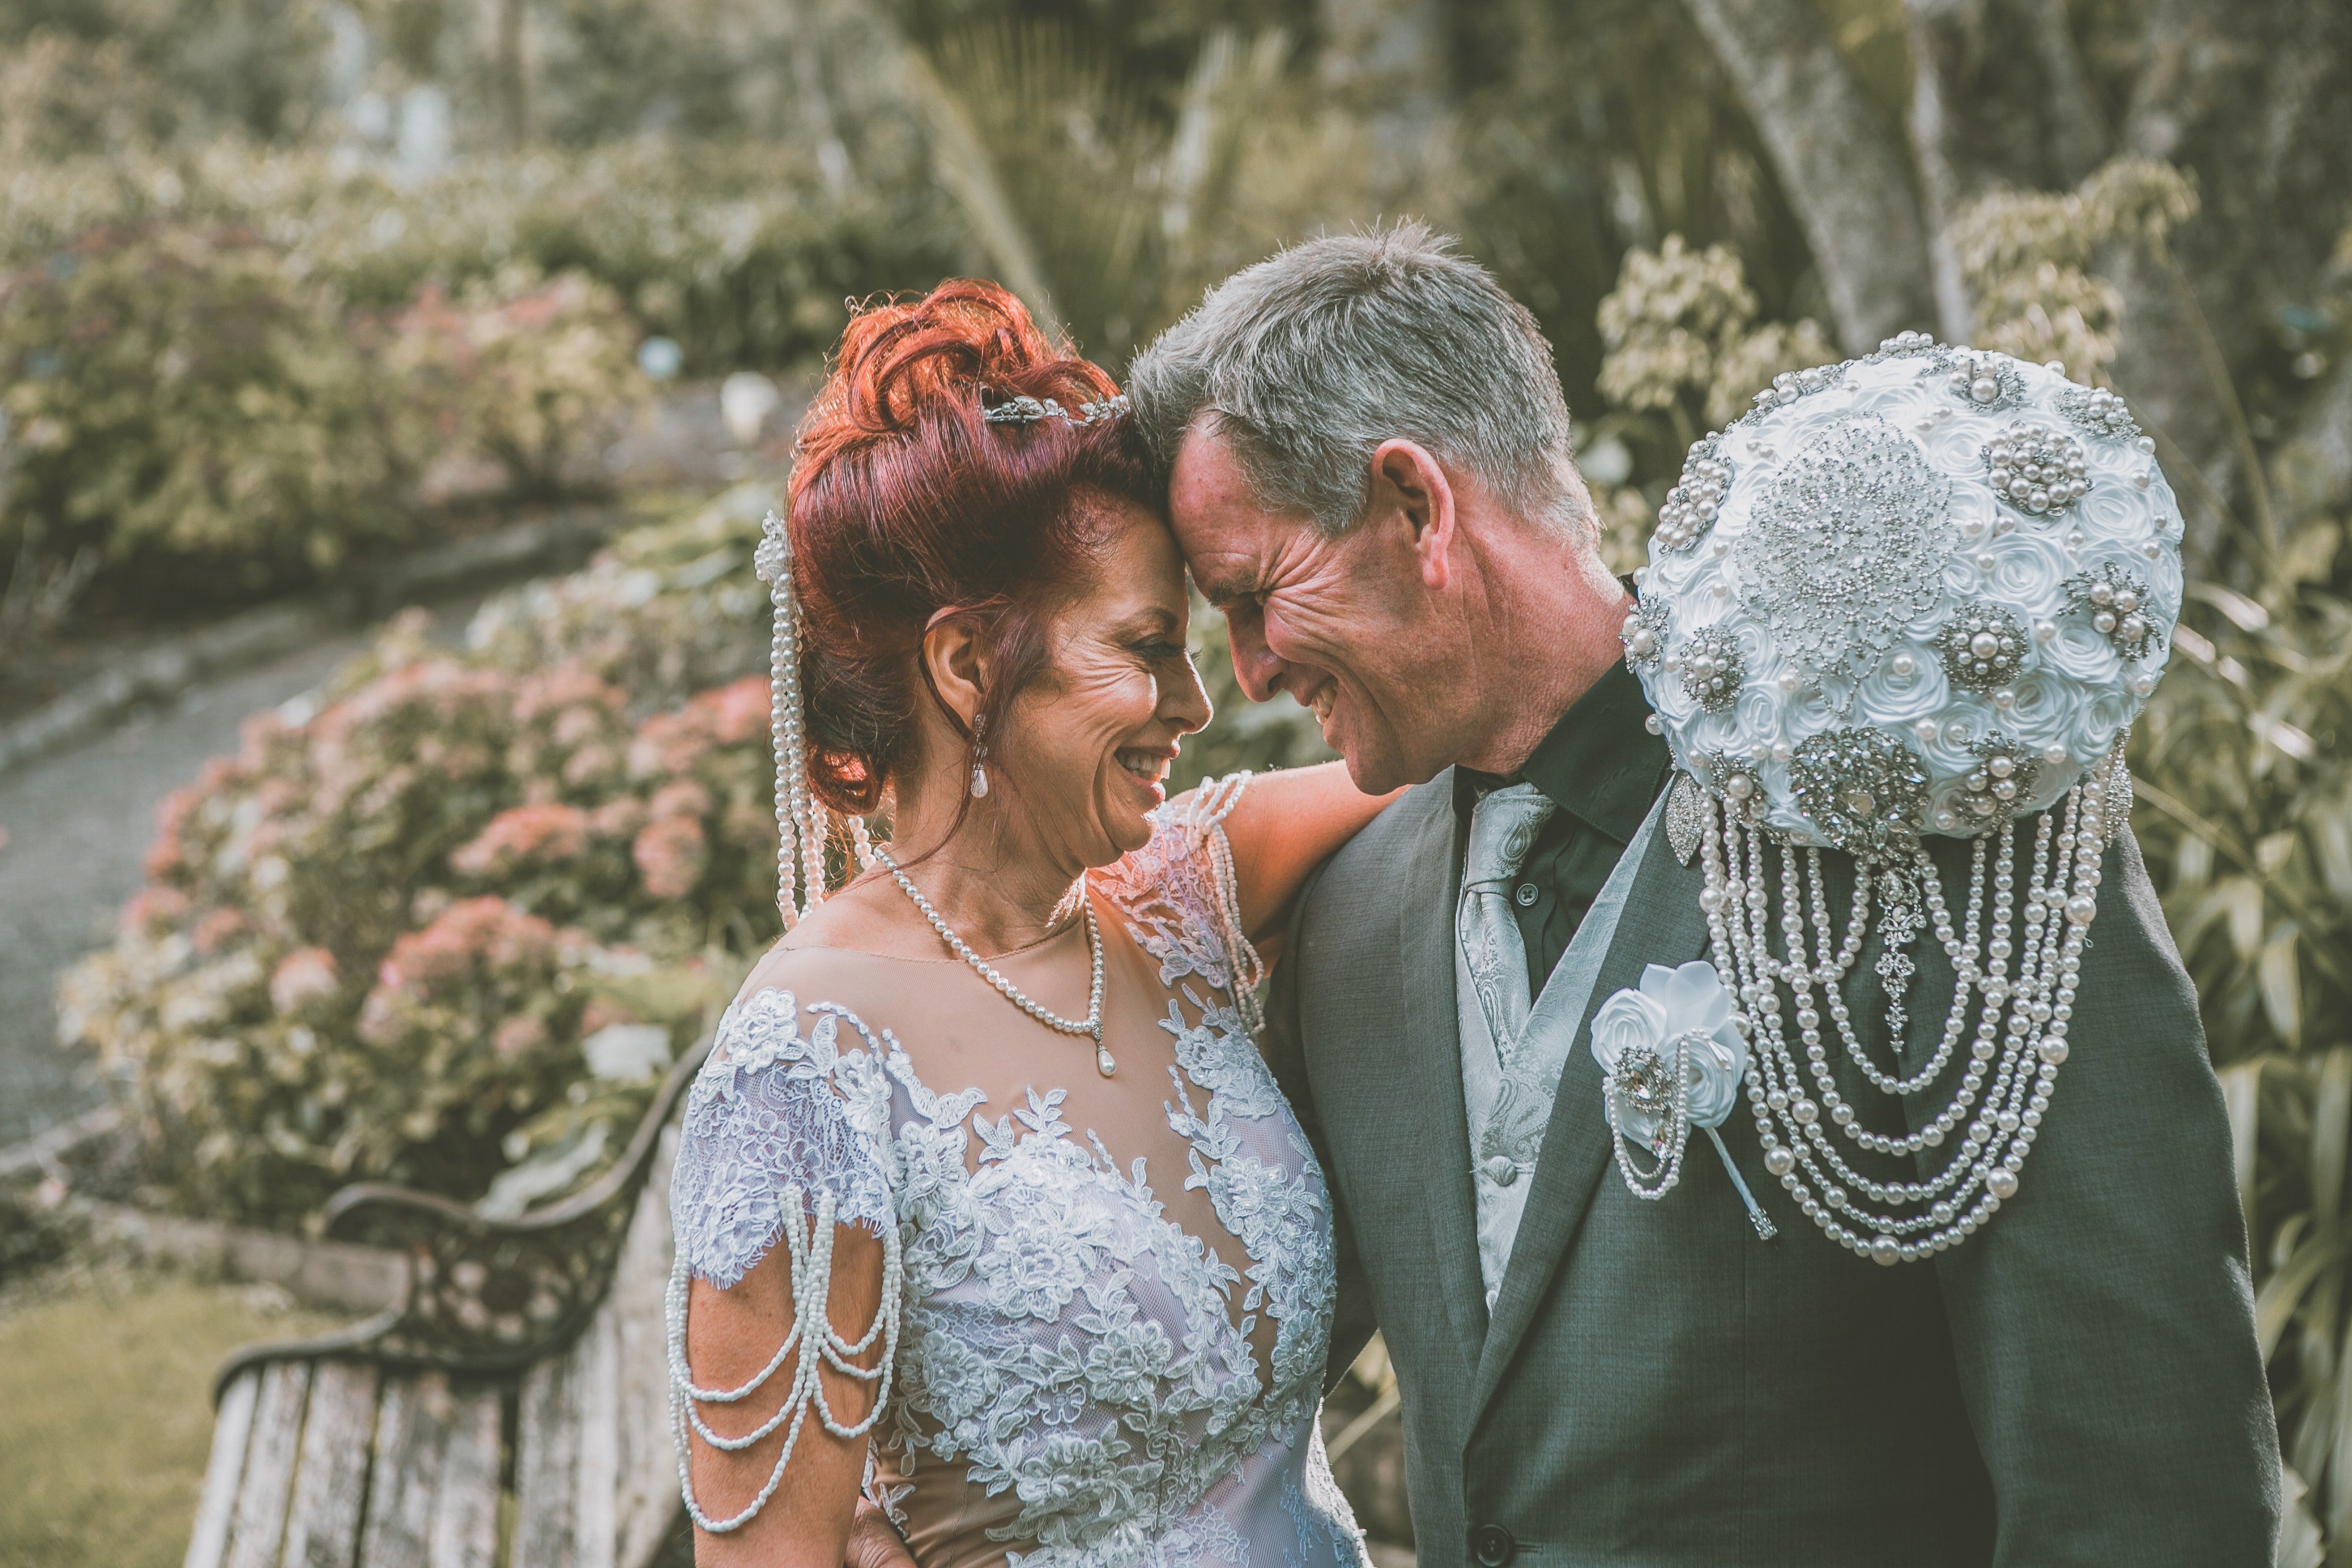 Sandra und John heirateten und lebten ein glückliches Leben. | Quelle: Pexels